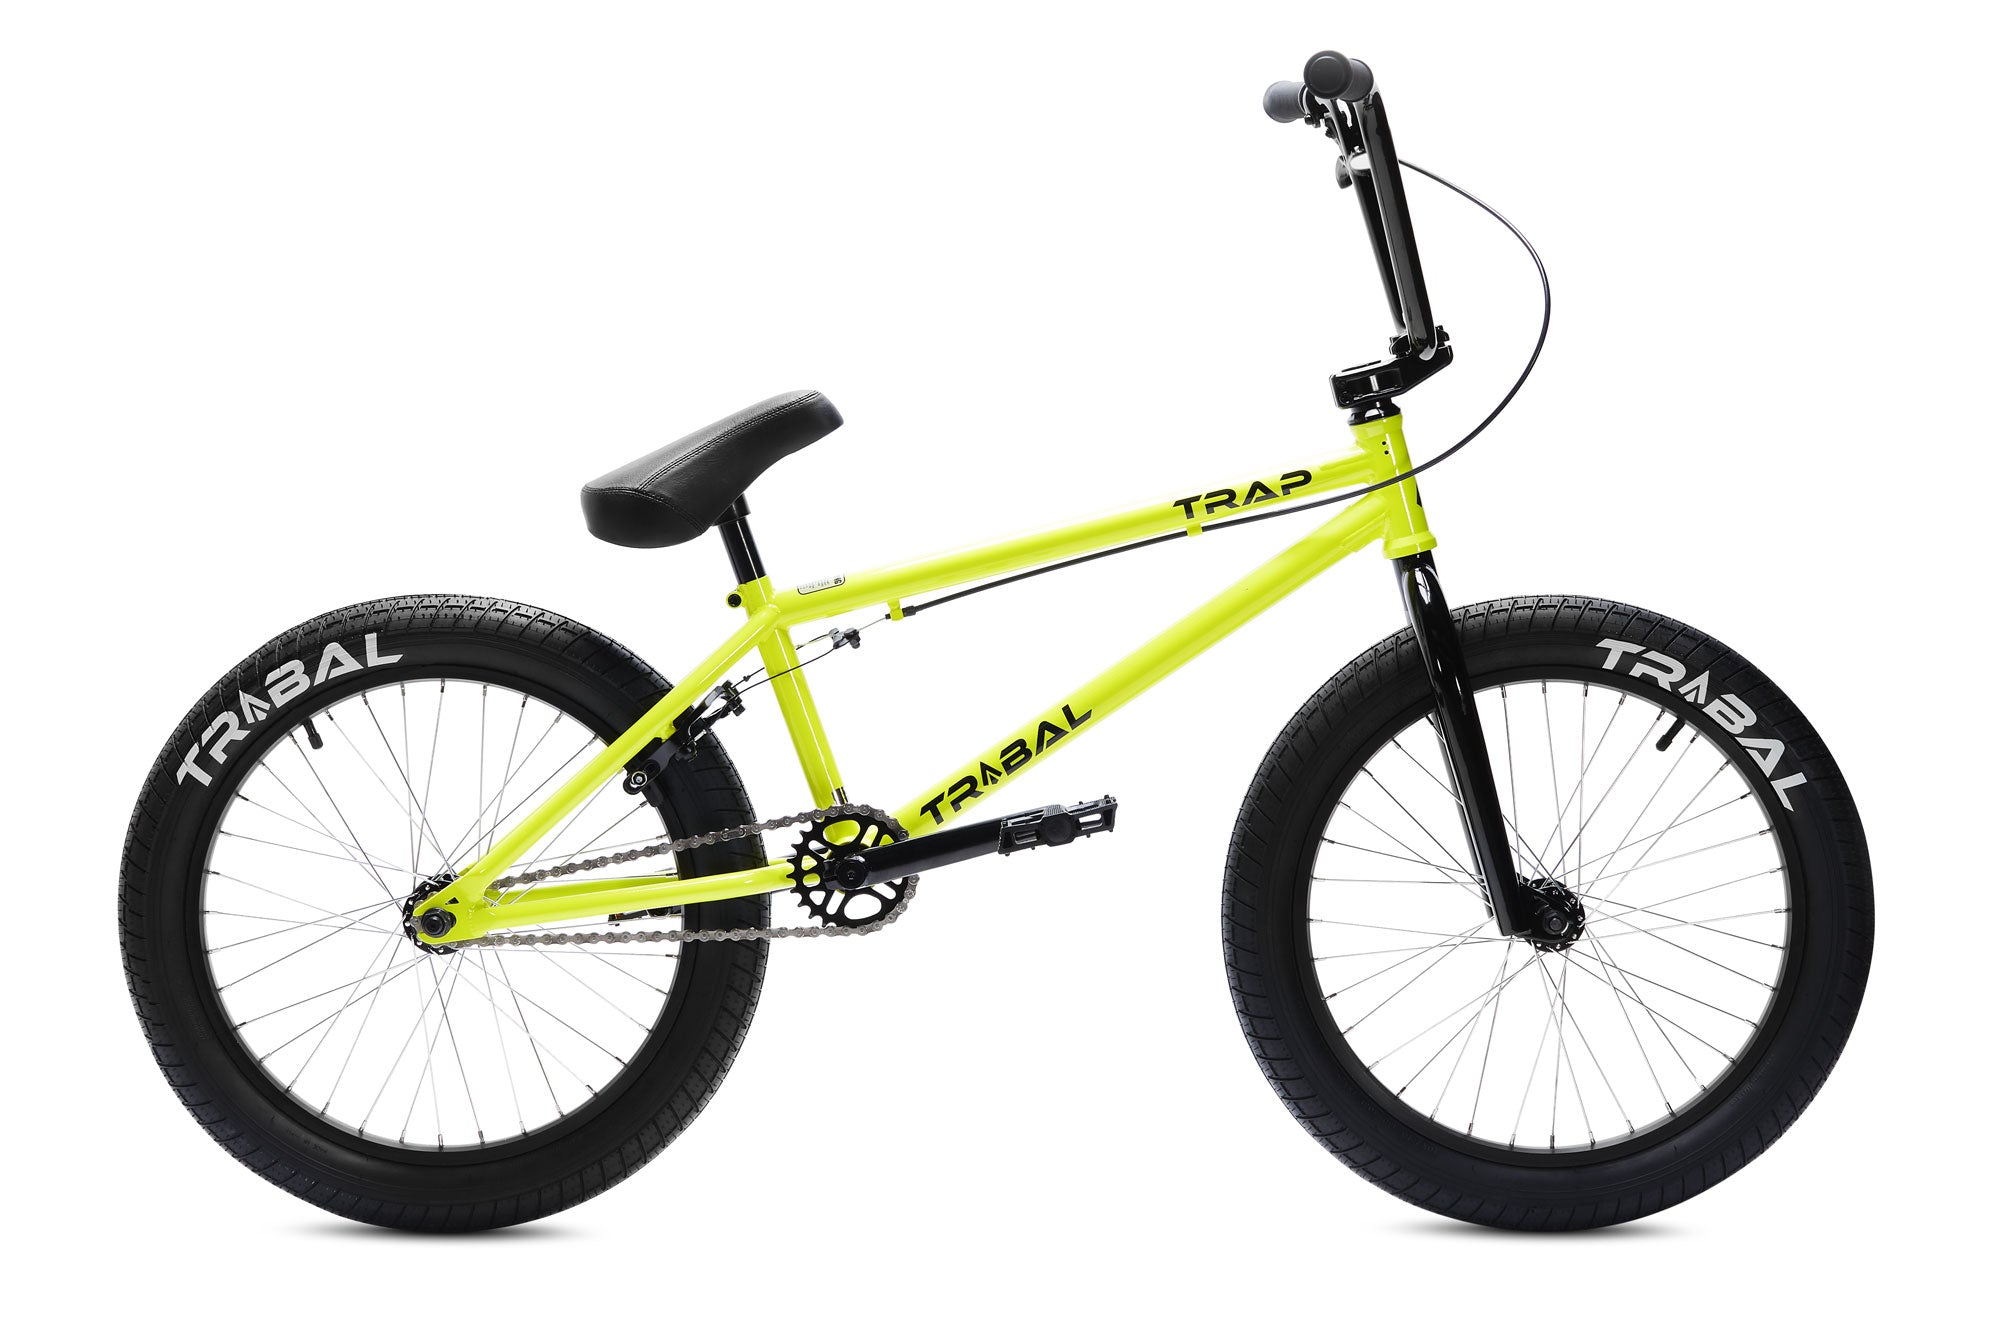 Tribal Trap BMX Bike - Neon Yellow V2